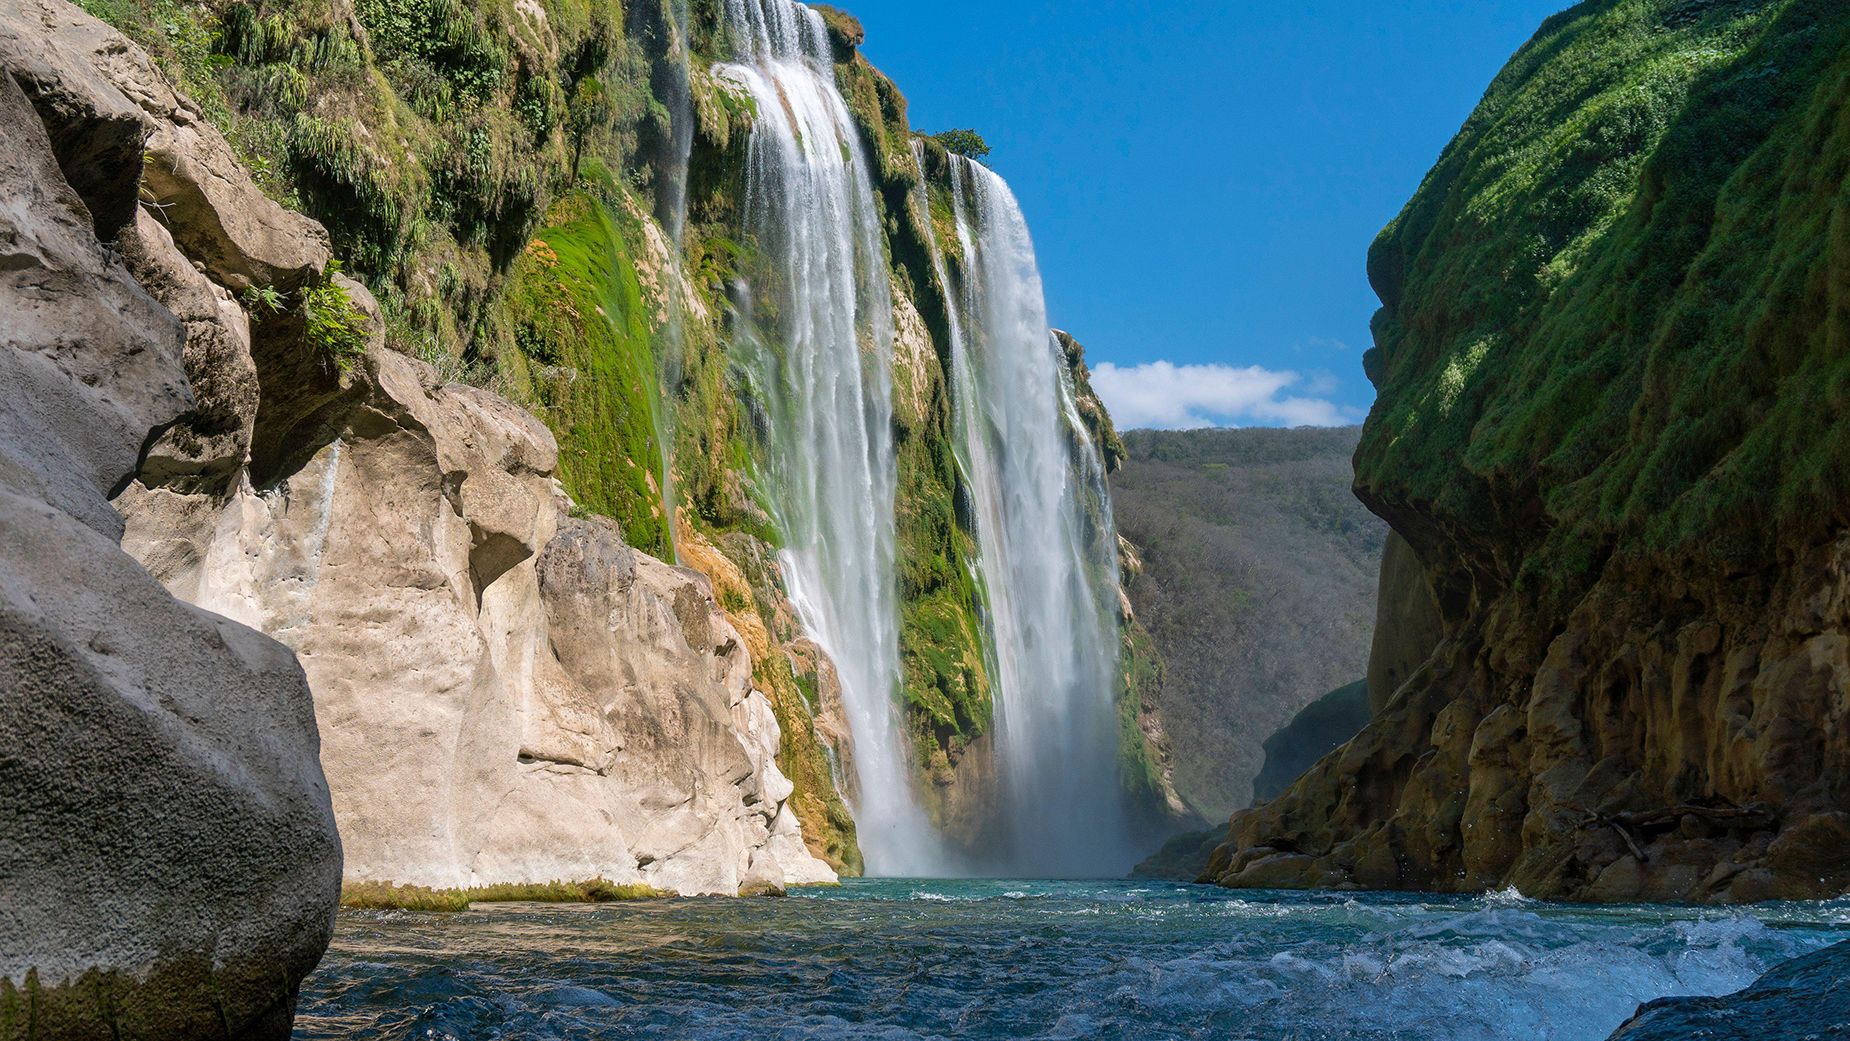 Cascada de Tamul — a top draw in Mexico's La Huasteca Potosina region — is an impressive sight when the falls are flowing.